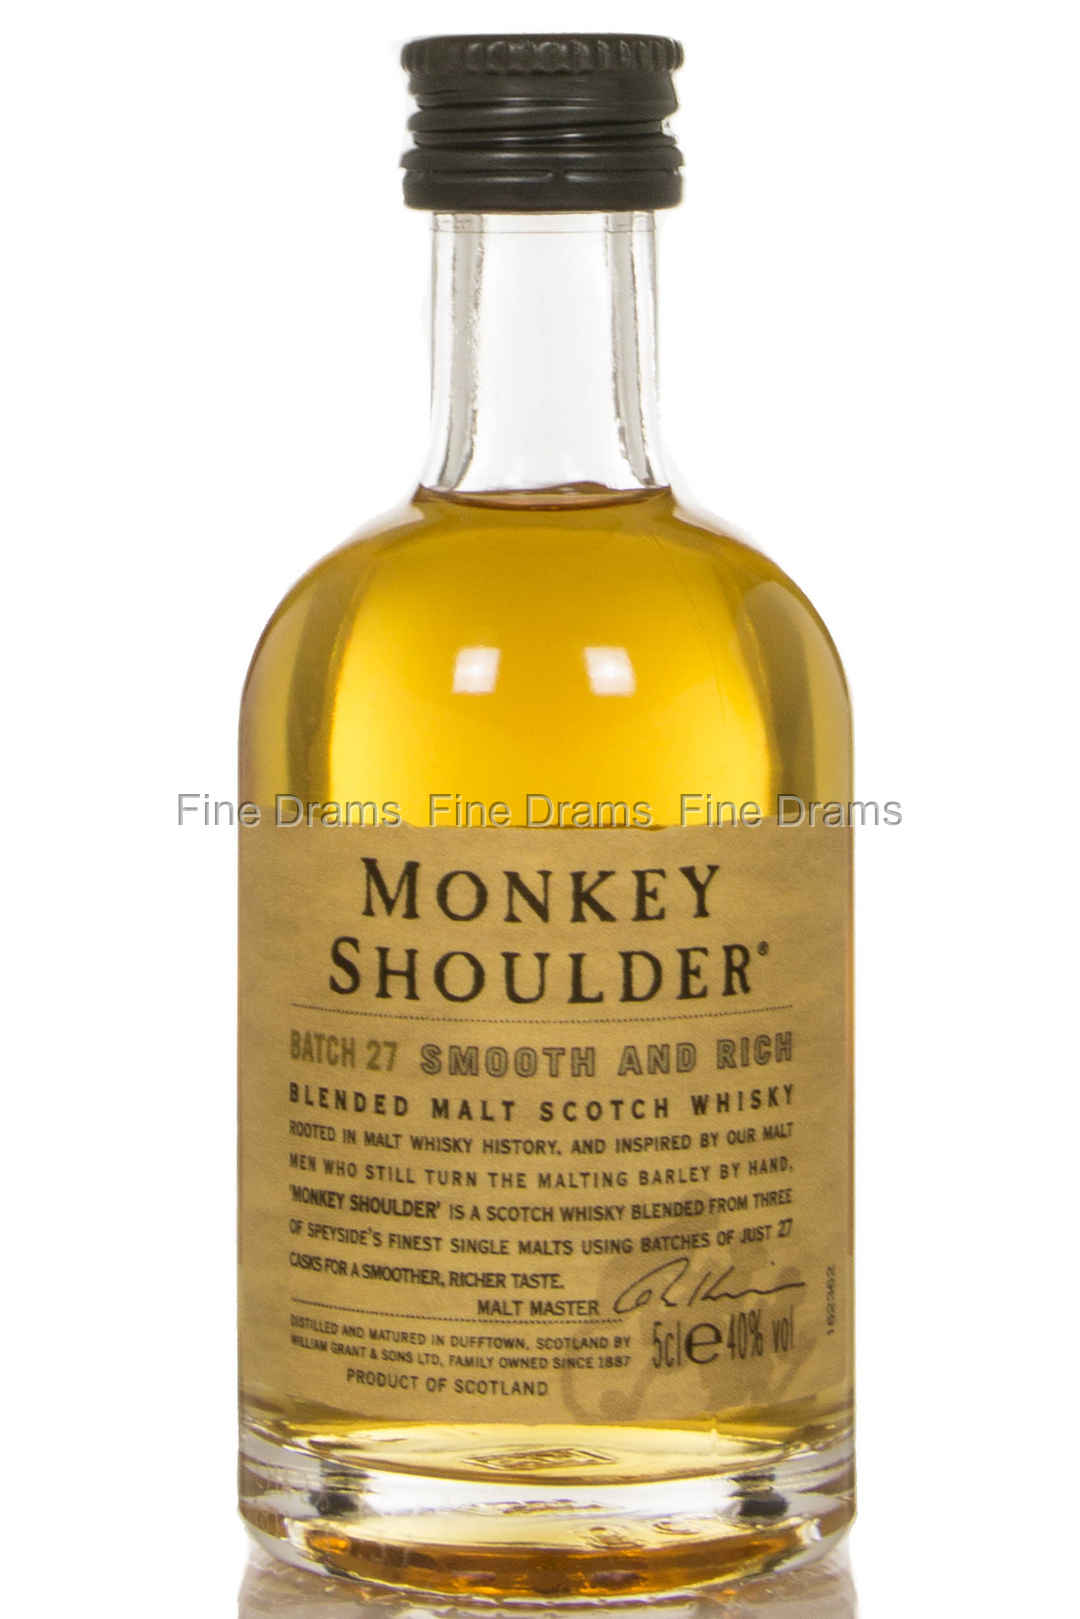 Monkey Shoulder Blended Malt Miniature Scotch Blended Malt Whisky